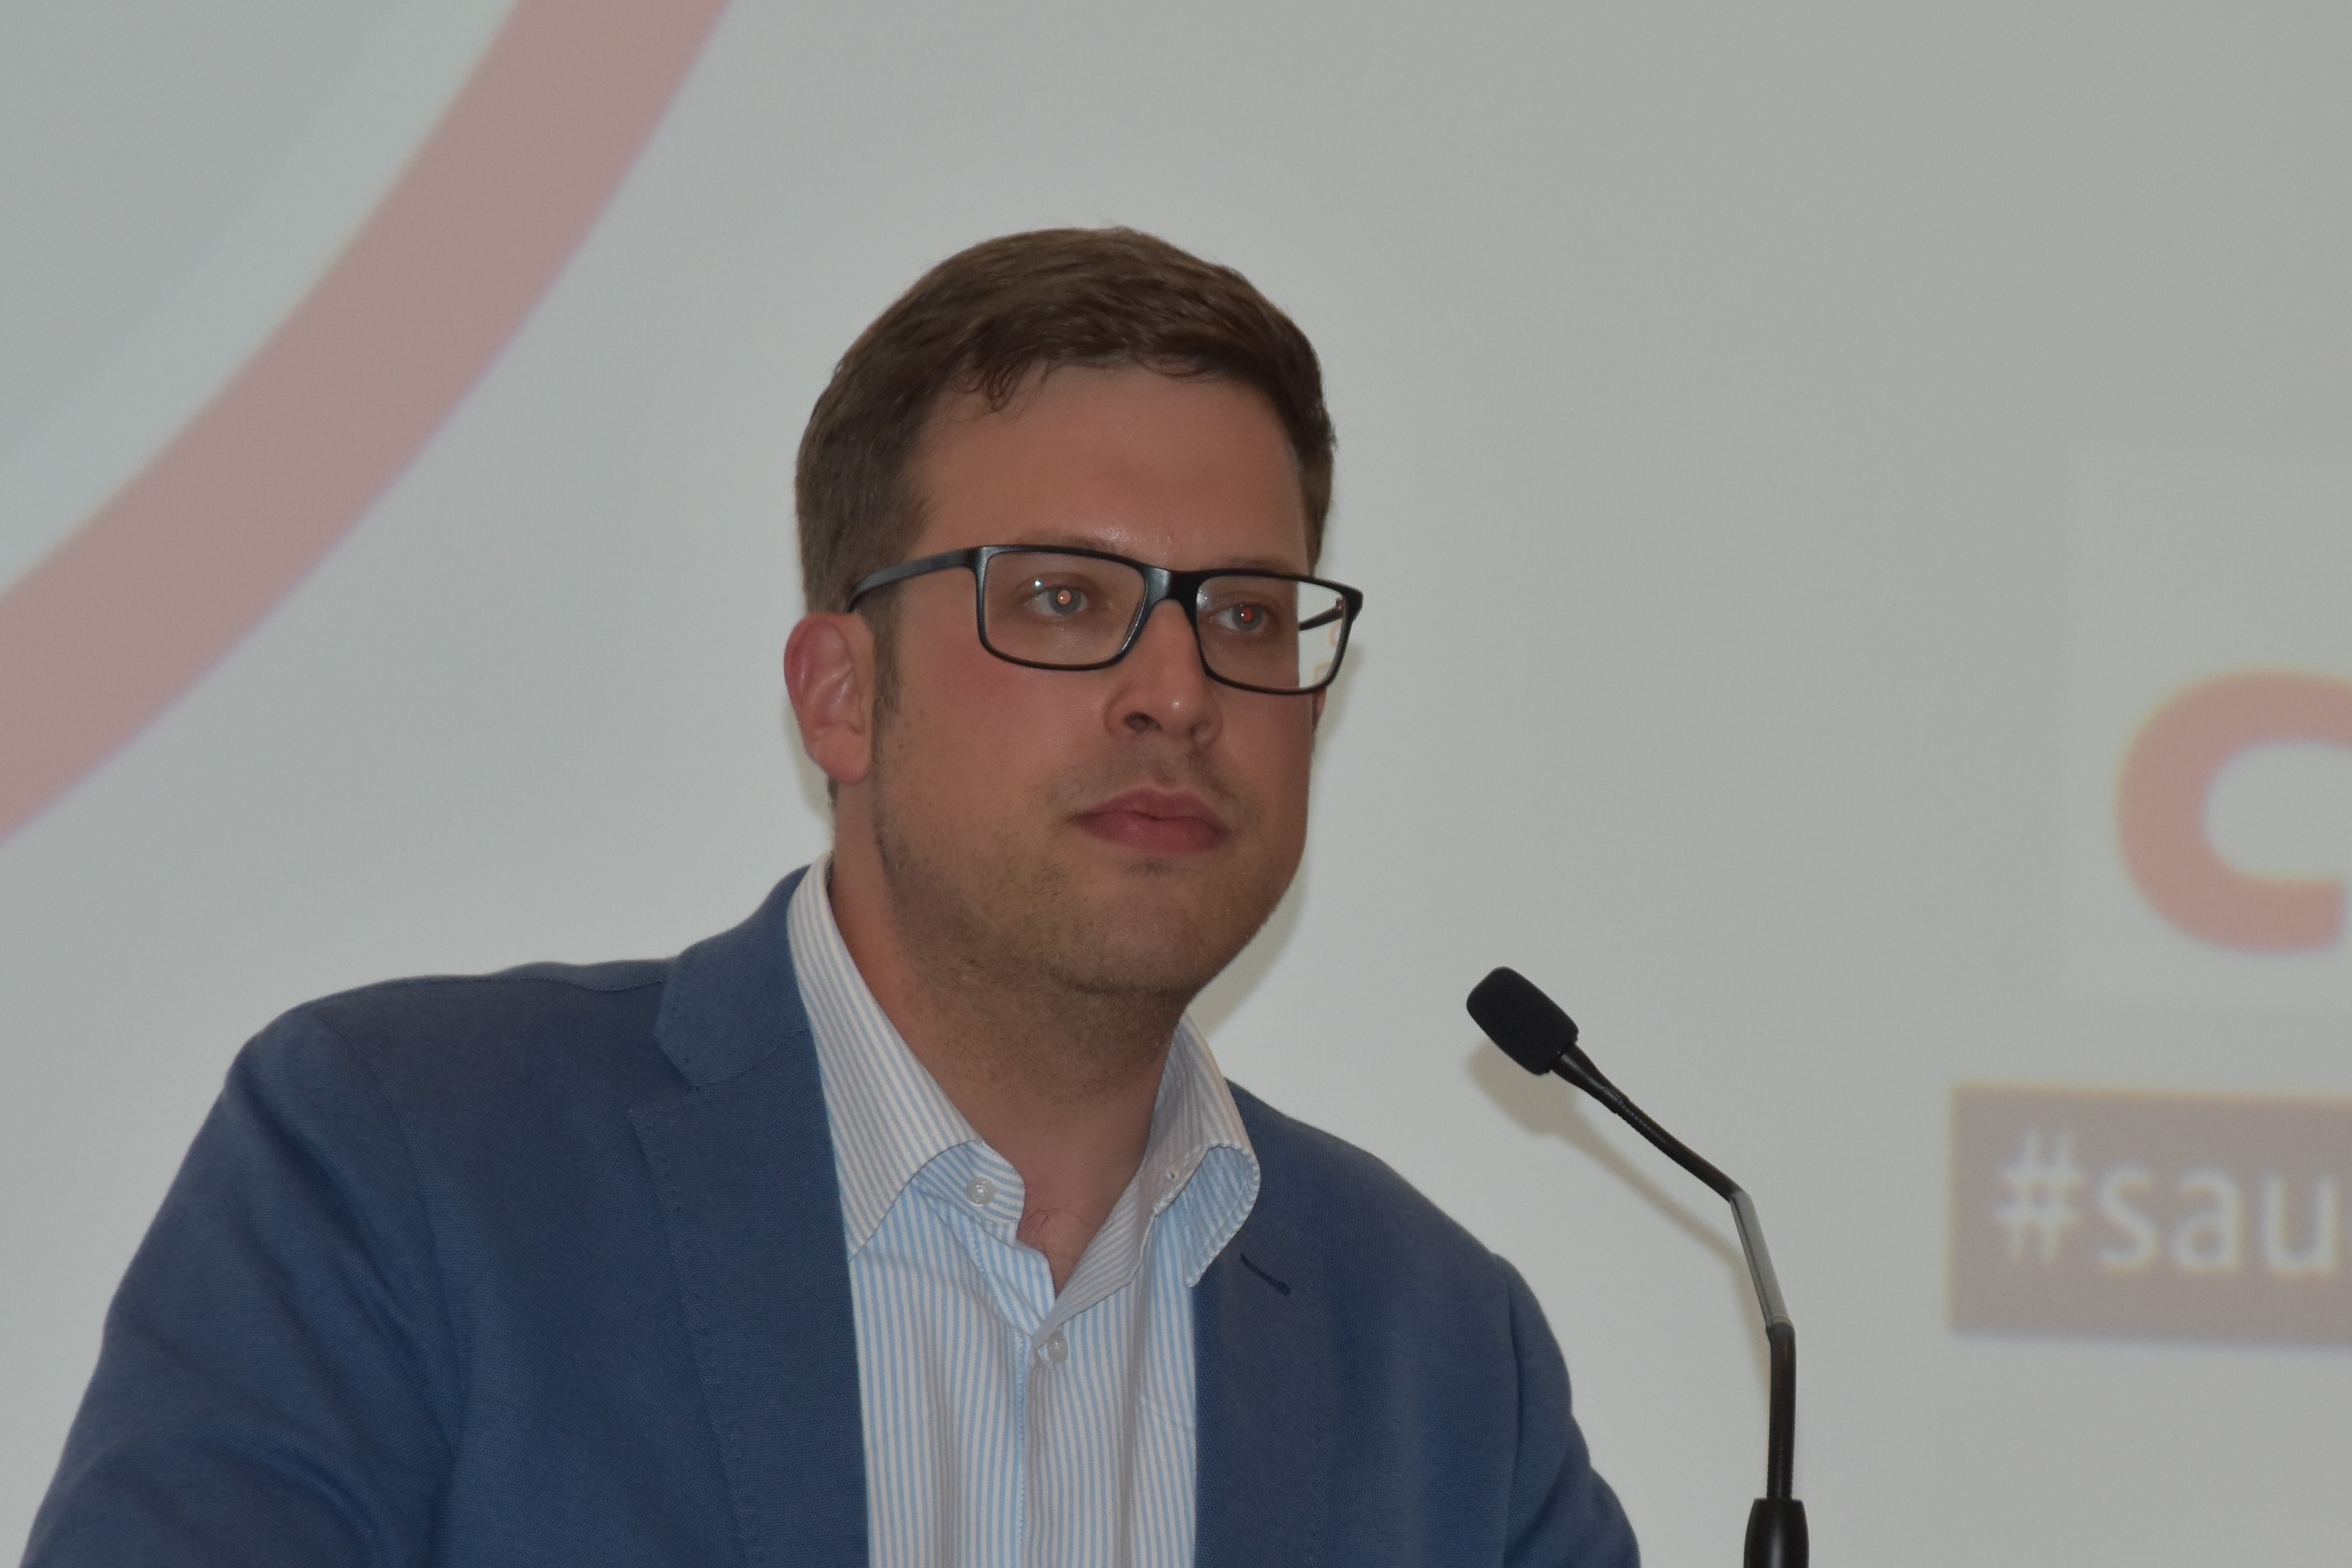 CDU-Bundestagskandidat Florian Müller, von Nicole Voss